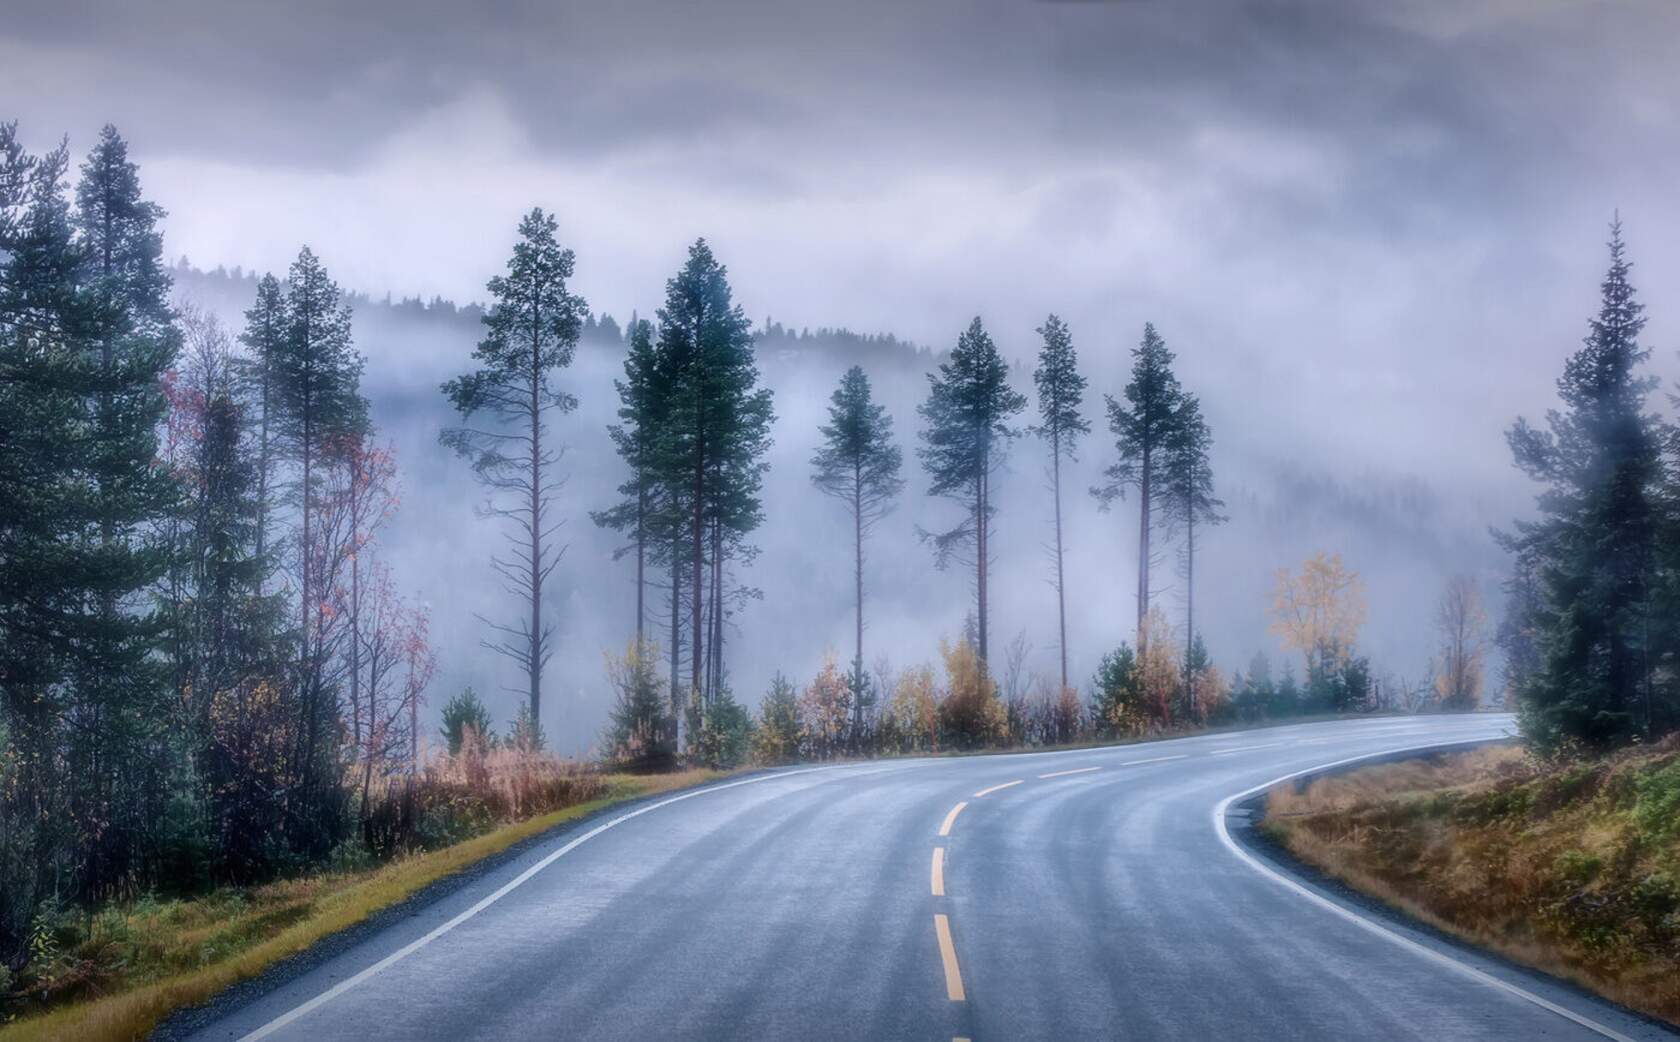 За тем поворотом дороги оказалась деревня. Дорога в тумане. Дорога в лесу. Лес туман дорога. Леса в тумане с дорогой.